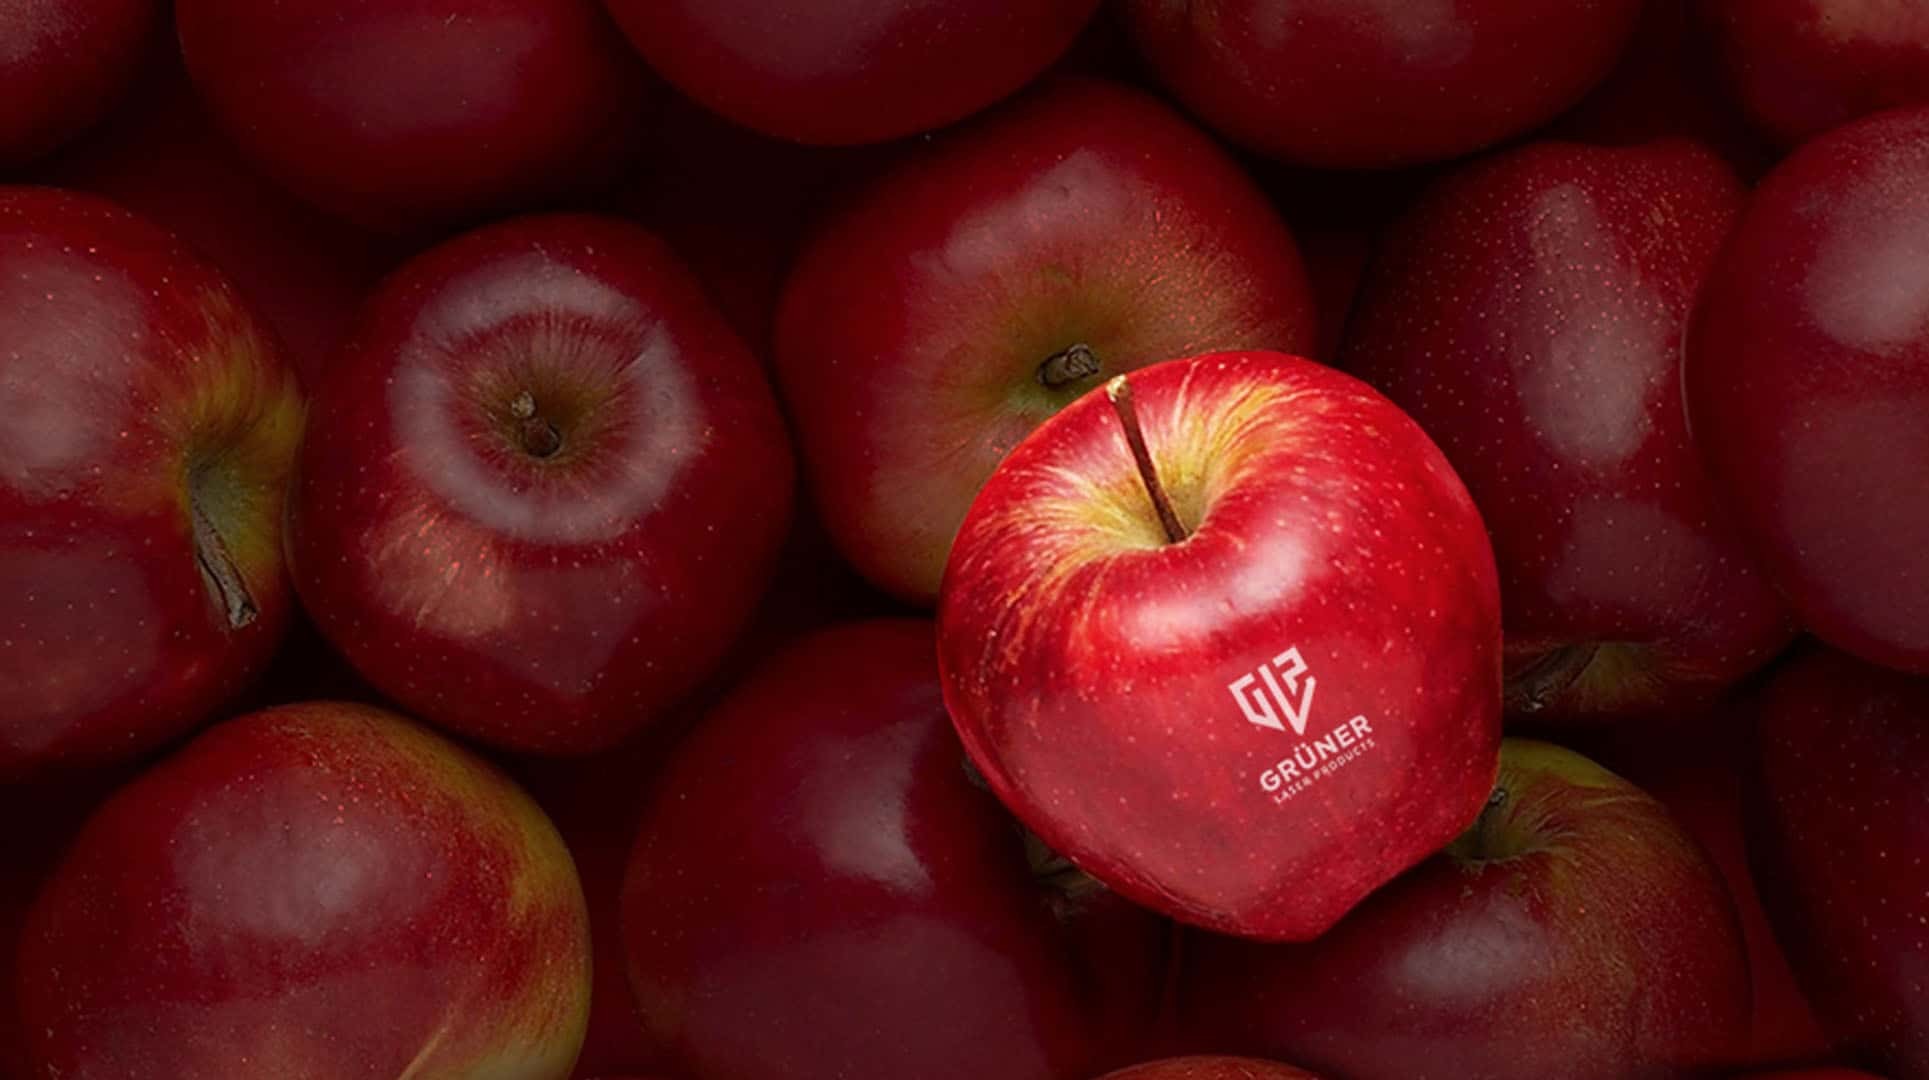 Logo auf Obst - Apfel mit Logo